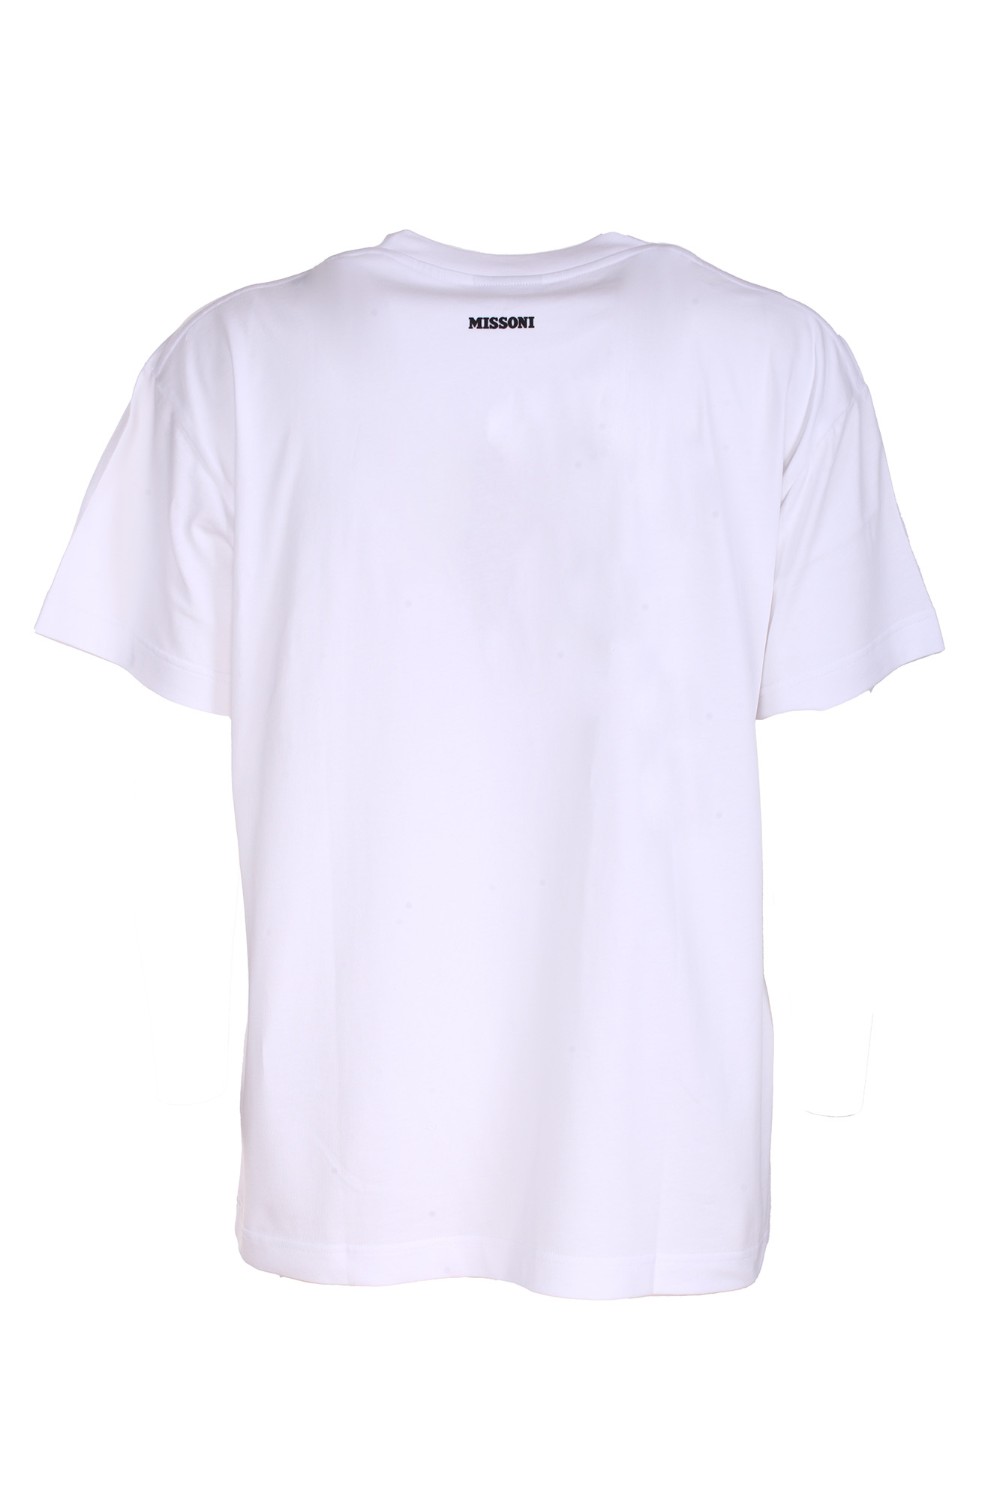 shop MISSONI Saldi T-shirt: Missoni t-shirt in cotone con taschino.
Maniche corte.
Vestibilità regolare.
Composizione: 100% cotone.
Made in Italy.. US23SL09-S016Y number 5391866